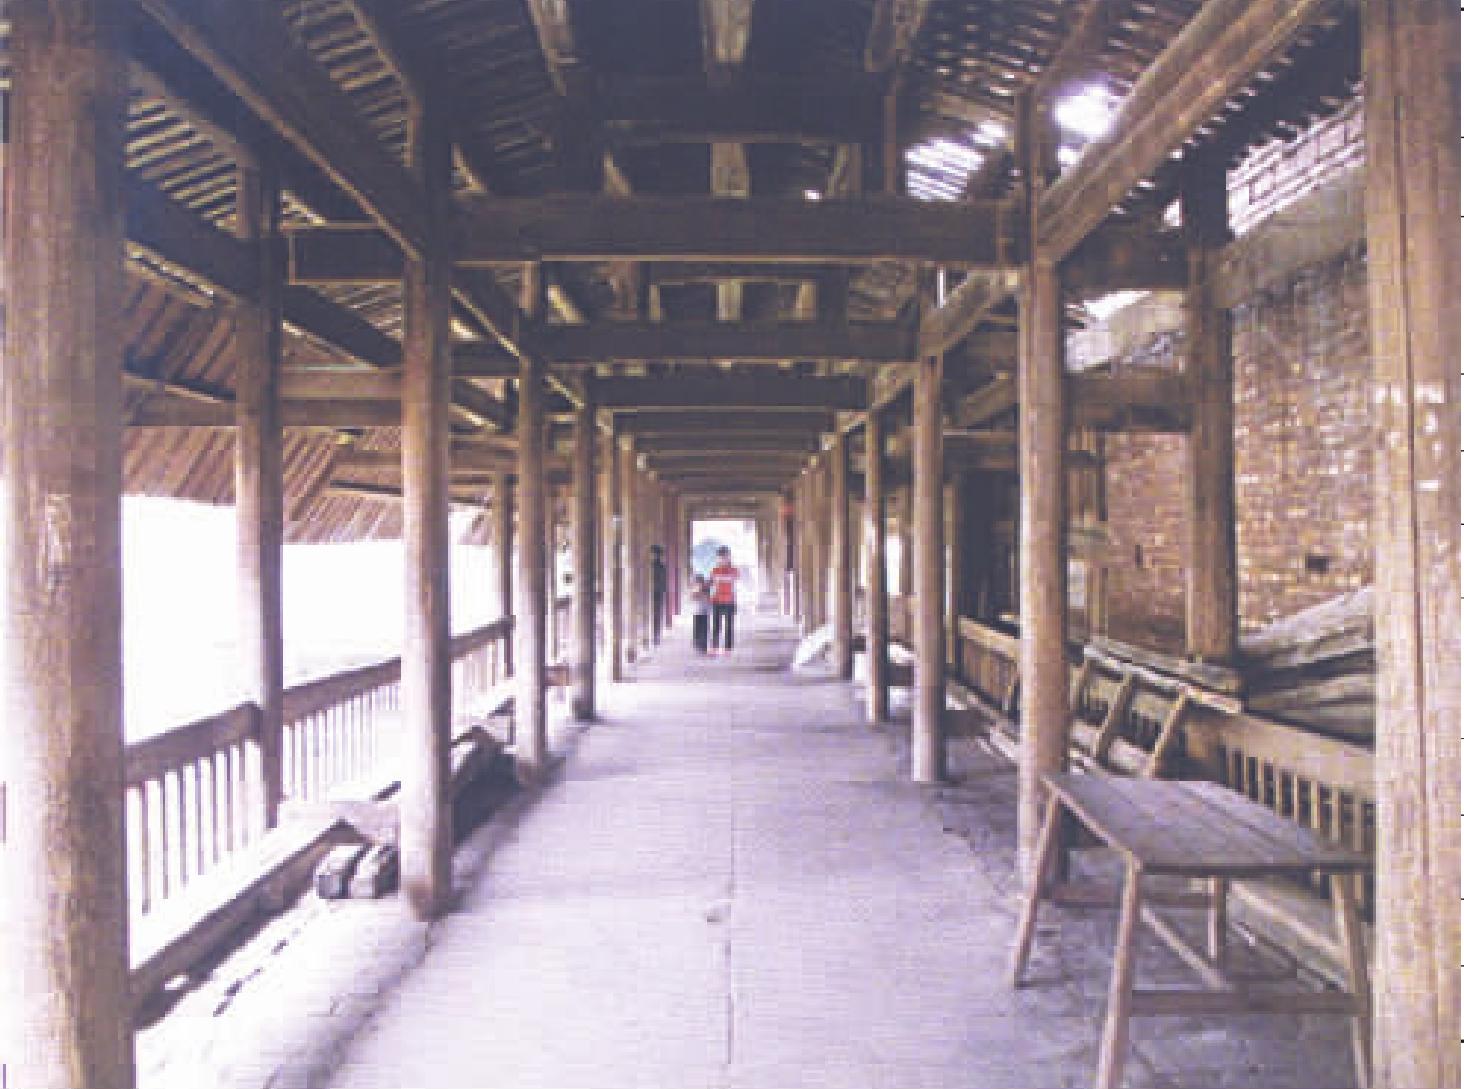 两个三节拱系统组成的贯木拱廊桥的实例